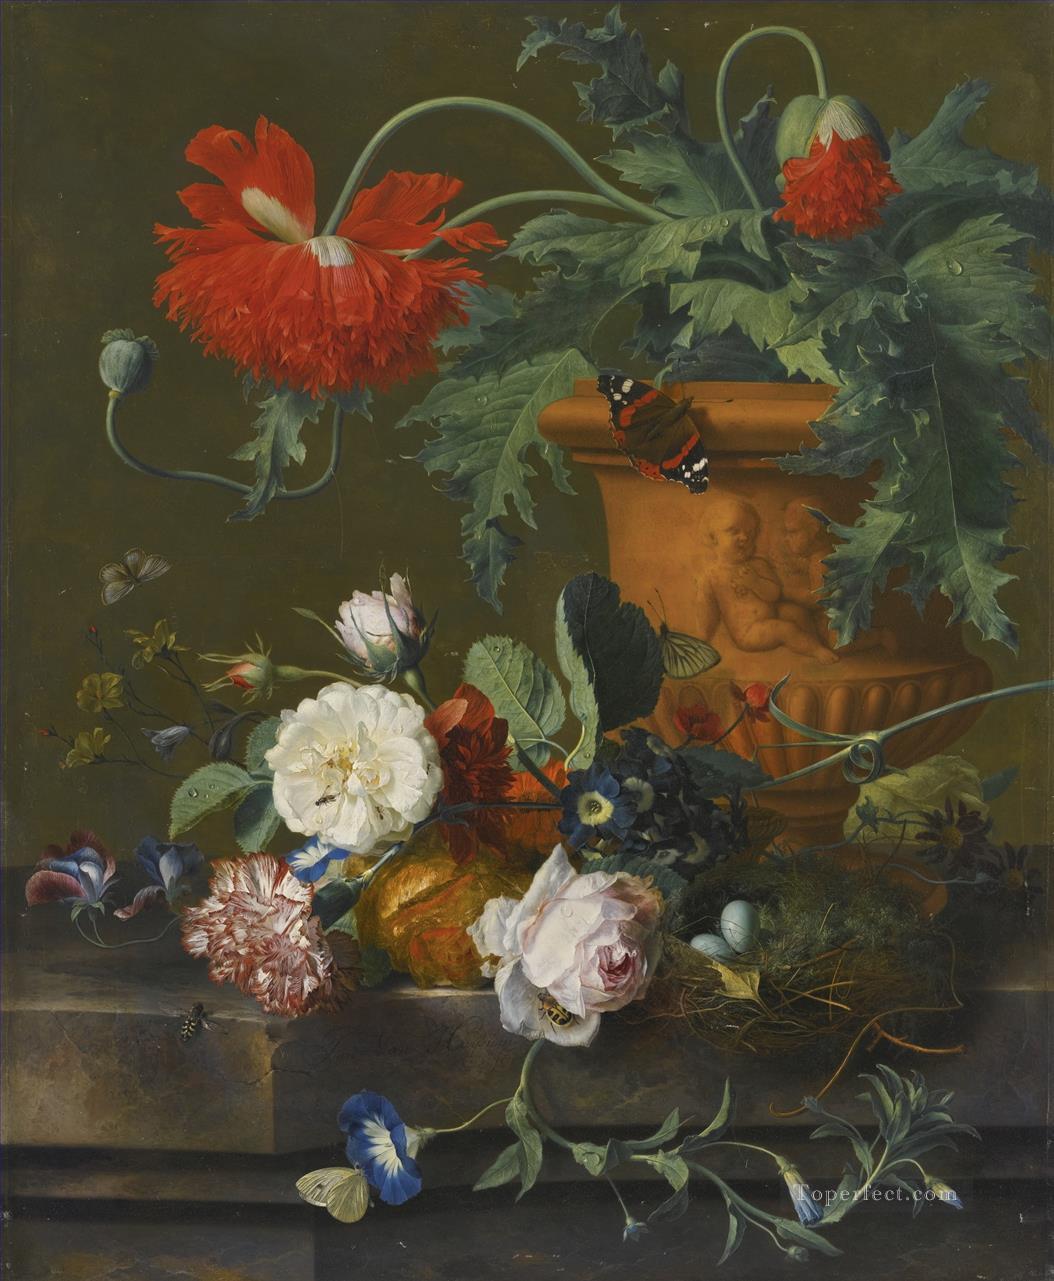 テラコッタの花瓶に入ったケシの静物 バラ カーネーションとその他の花 ヤン・ファン・ホイスム油絵